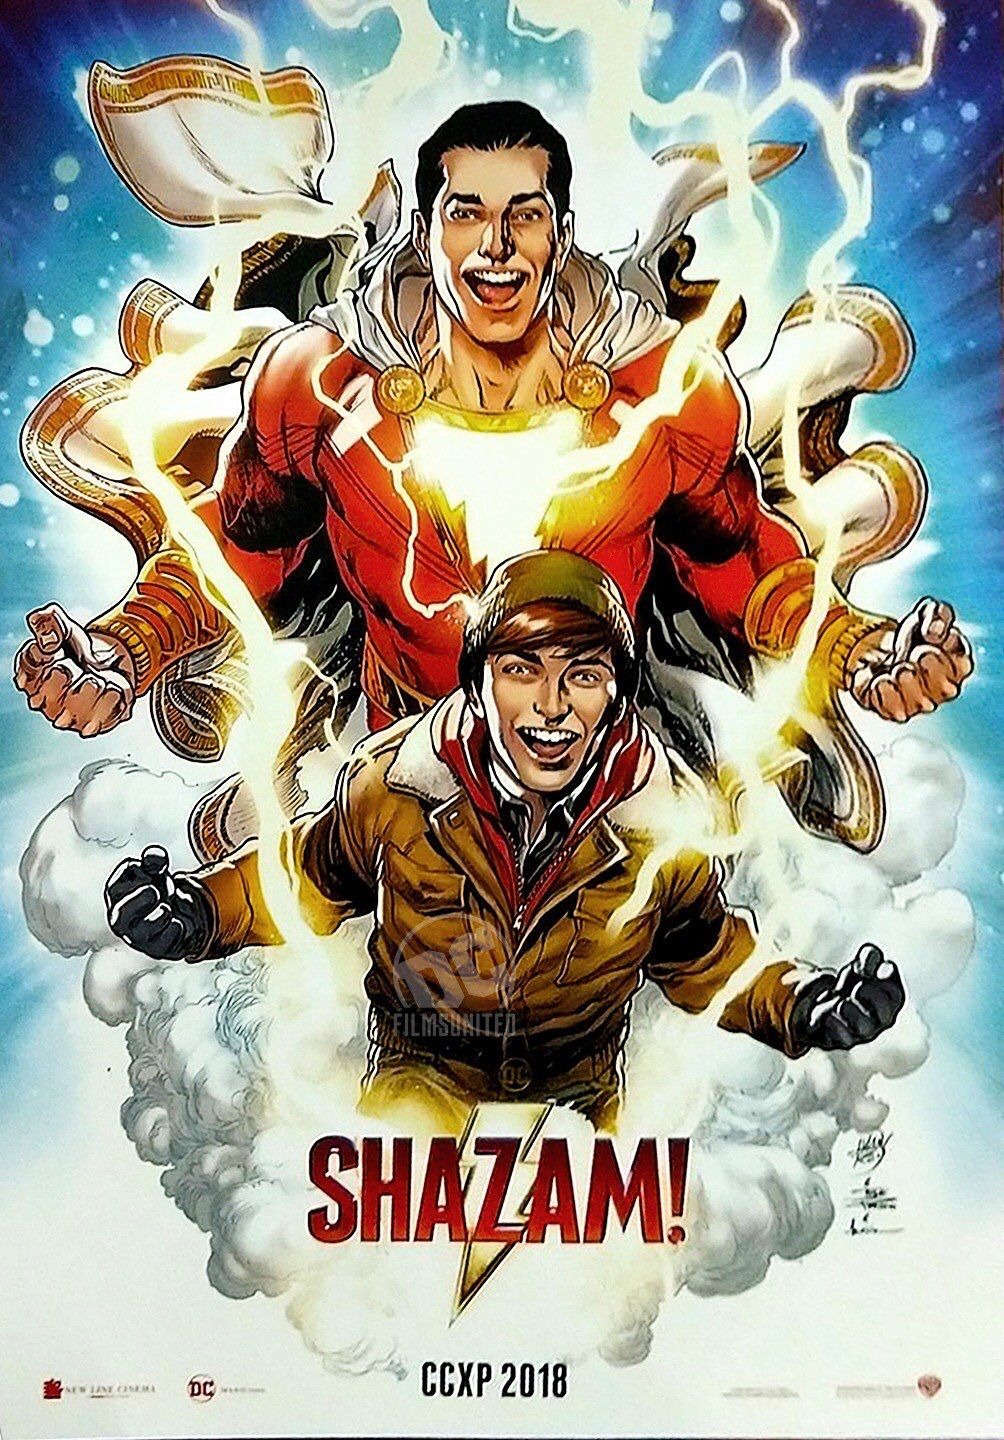 Extra Large Movie Poster Image for Shazam! (#2 of 10)